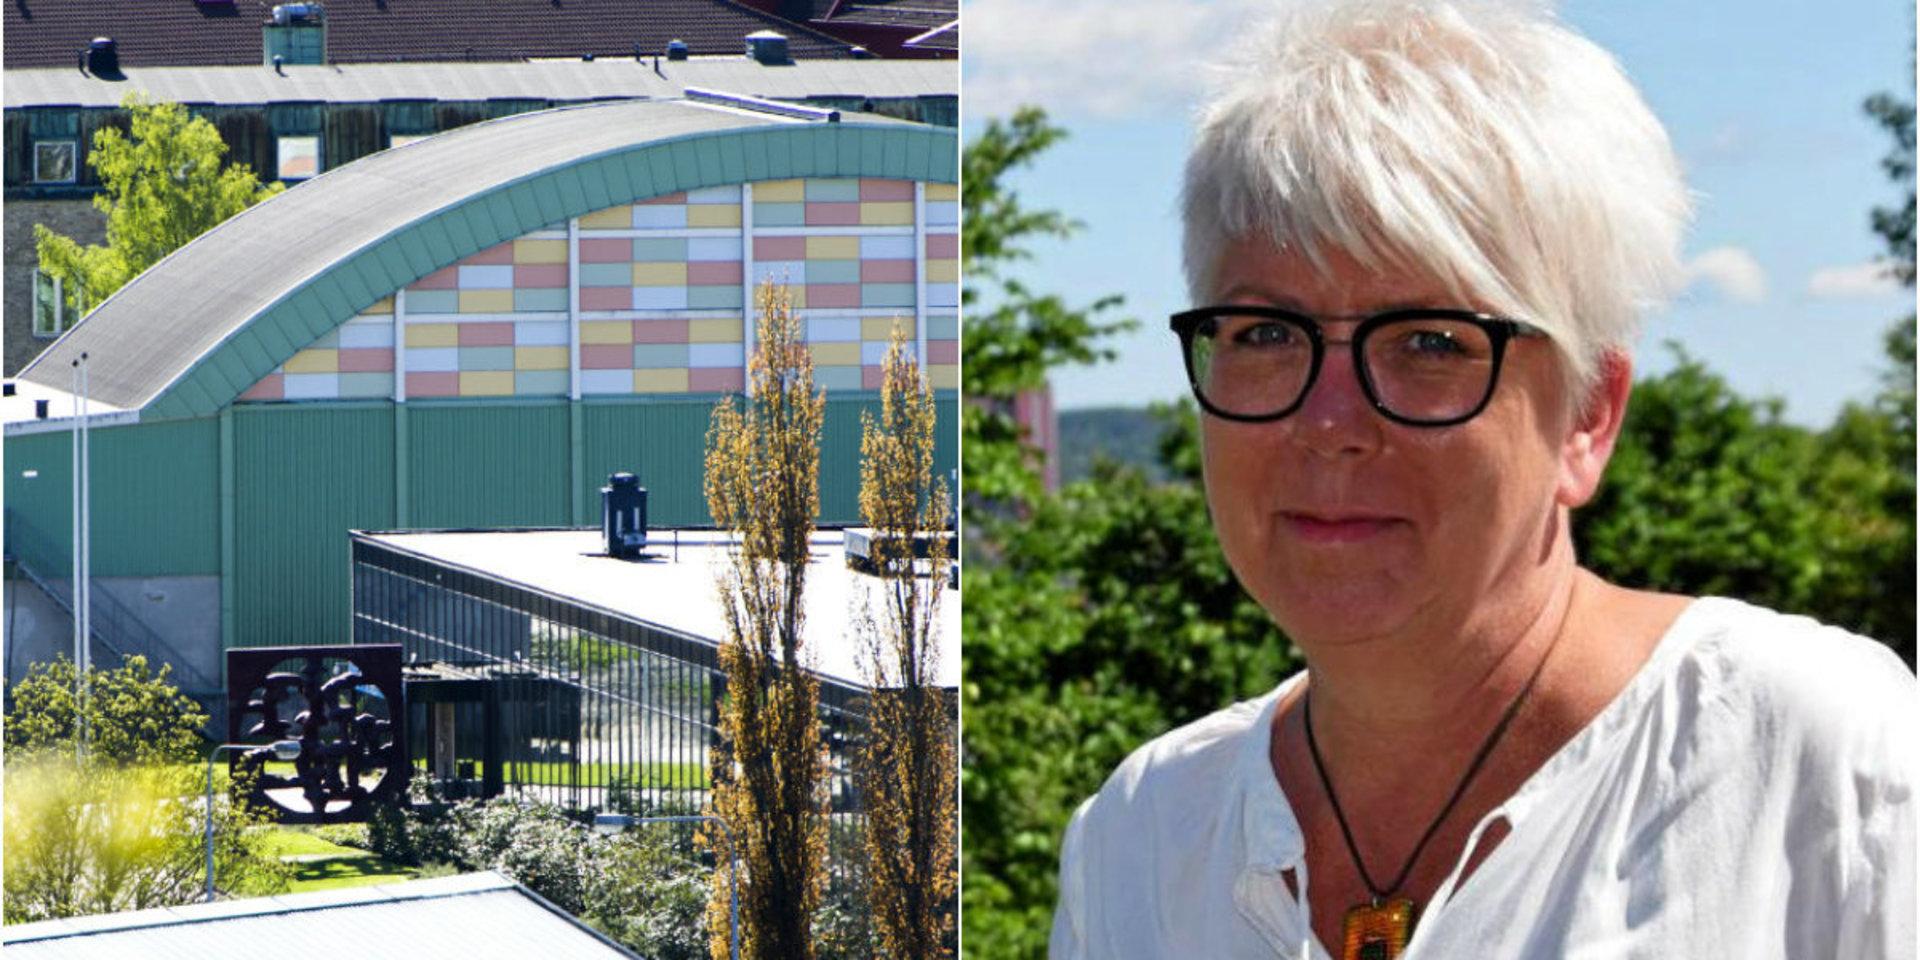 Nuvarande badhuset Walkesborg föreslås hänga med i fem år till. Kultur- och fritidsförvaltningens chef Katarina Hansson har beställt en utredning om vilka åtgärder som måste göras.